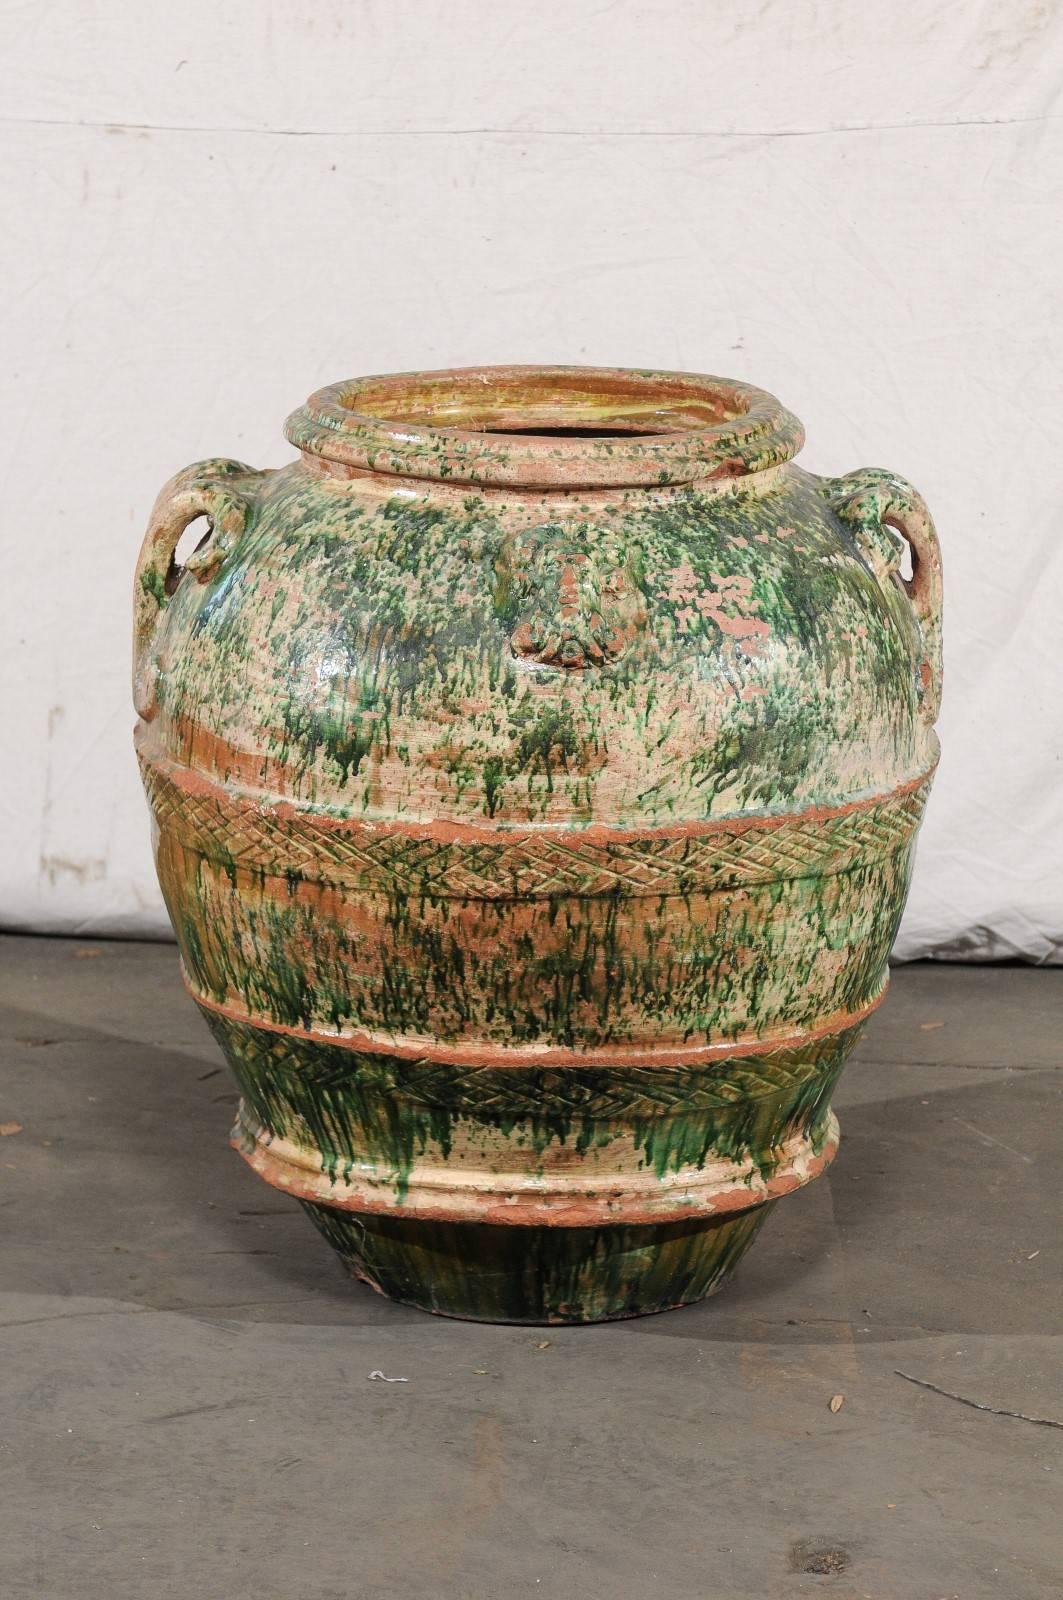 Jumbo 19th century Italian green glazed pot.